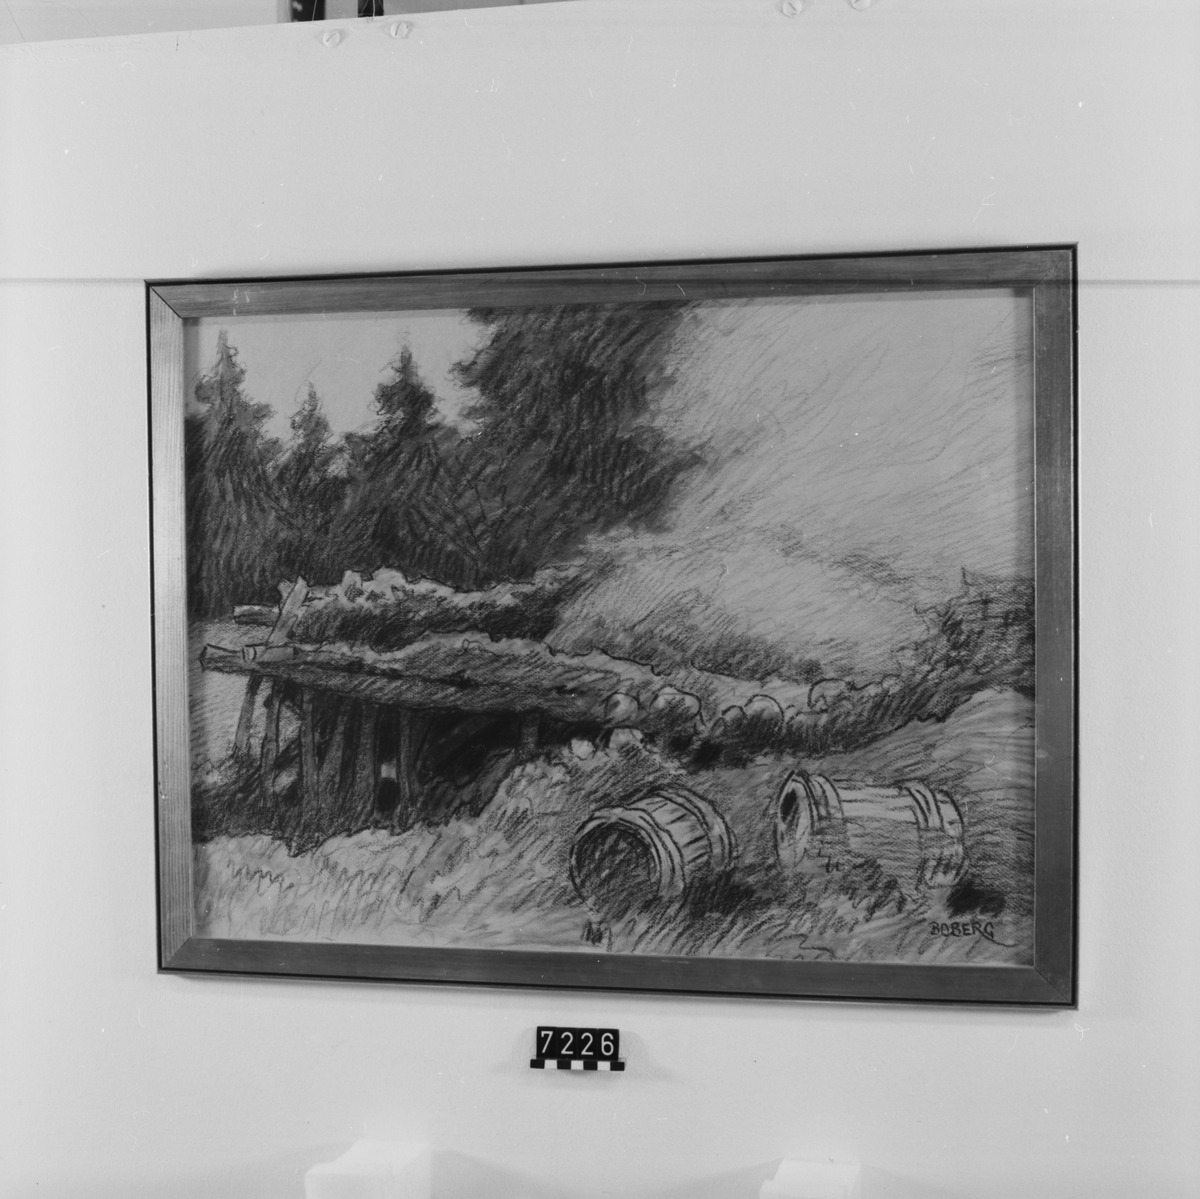 Signerad: "Boberg". På tavlans baksida: "Tjärdal vid Arvidsjaur/ (Norrbotten) 1924". "Ferdinand Boberg". I glas och förgylld ram.